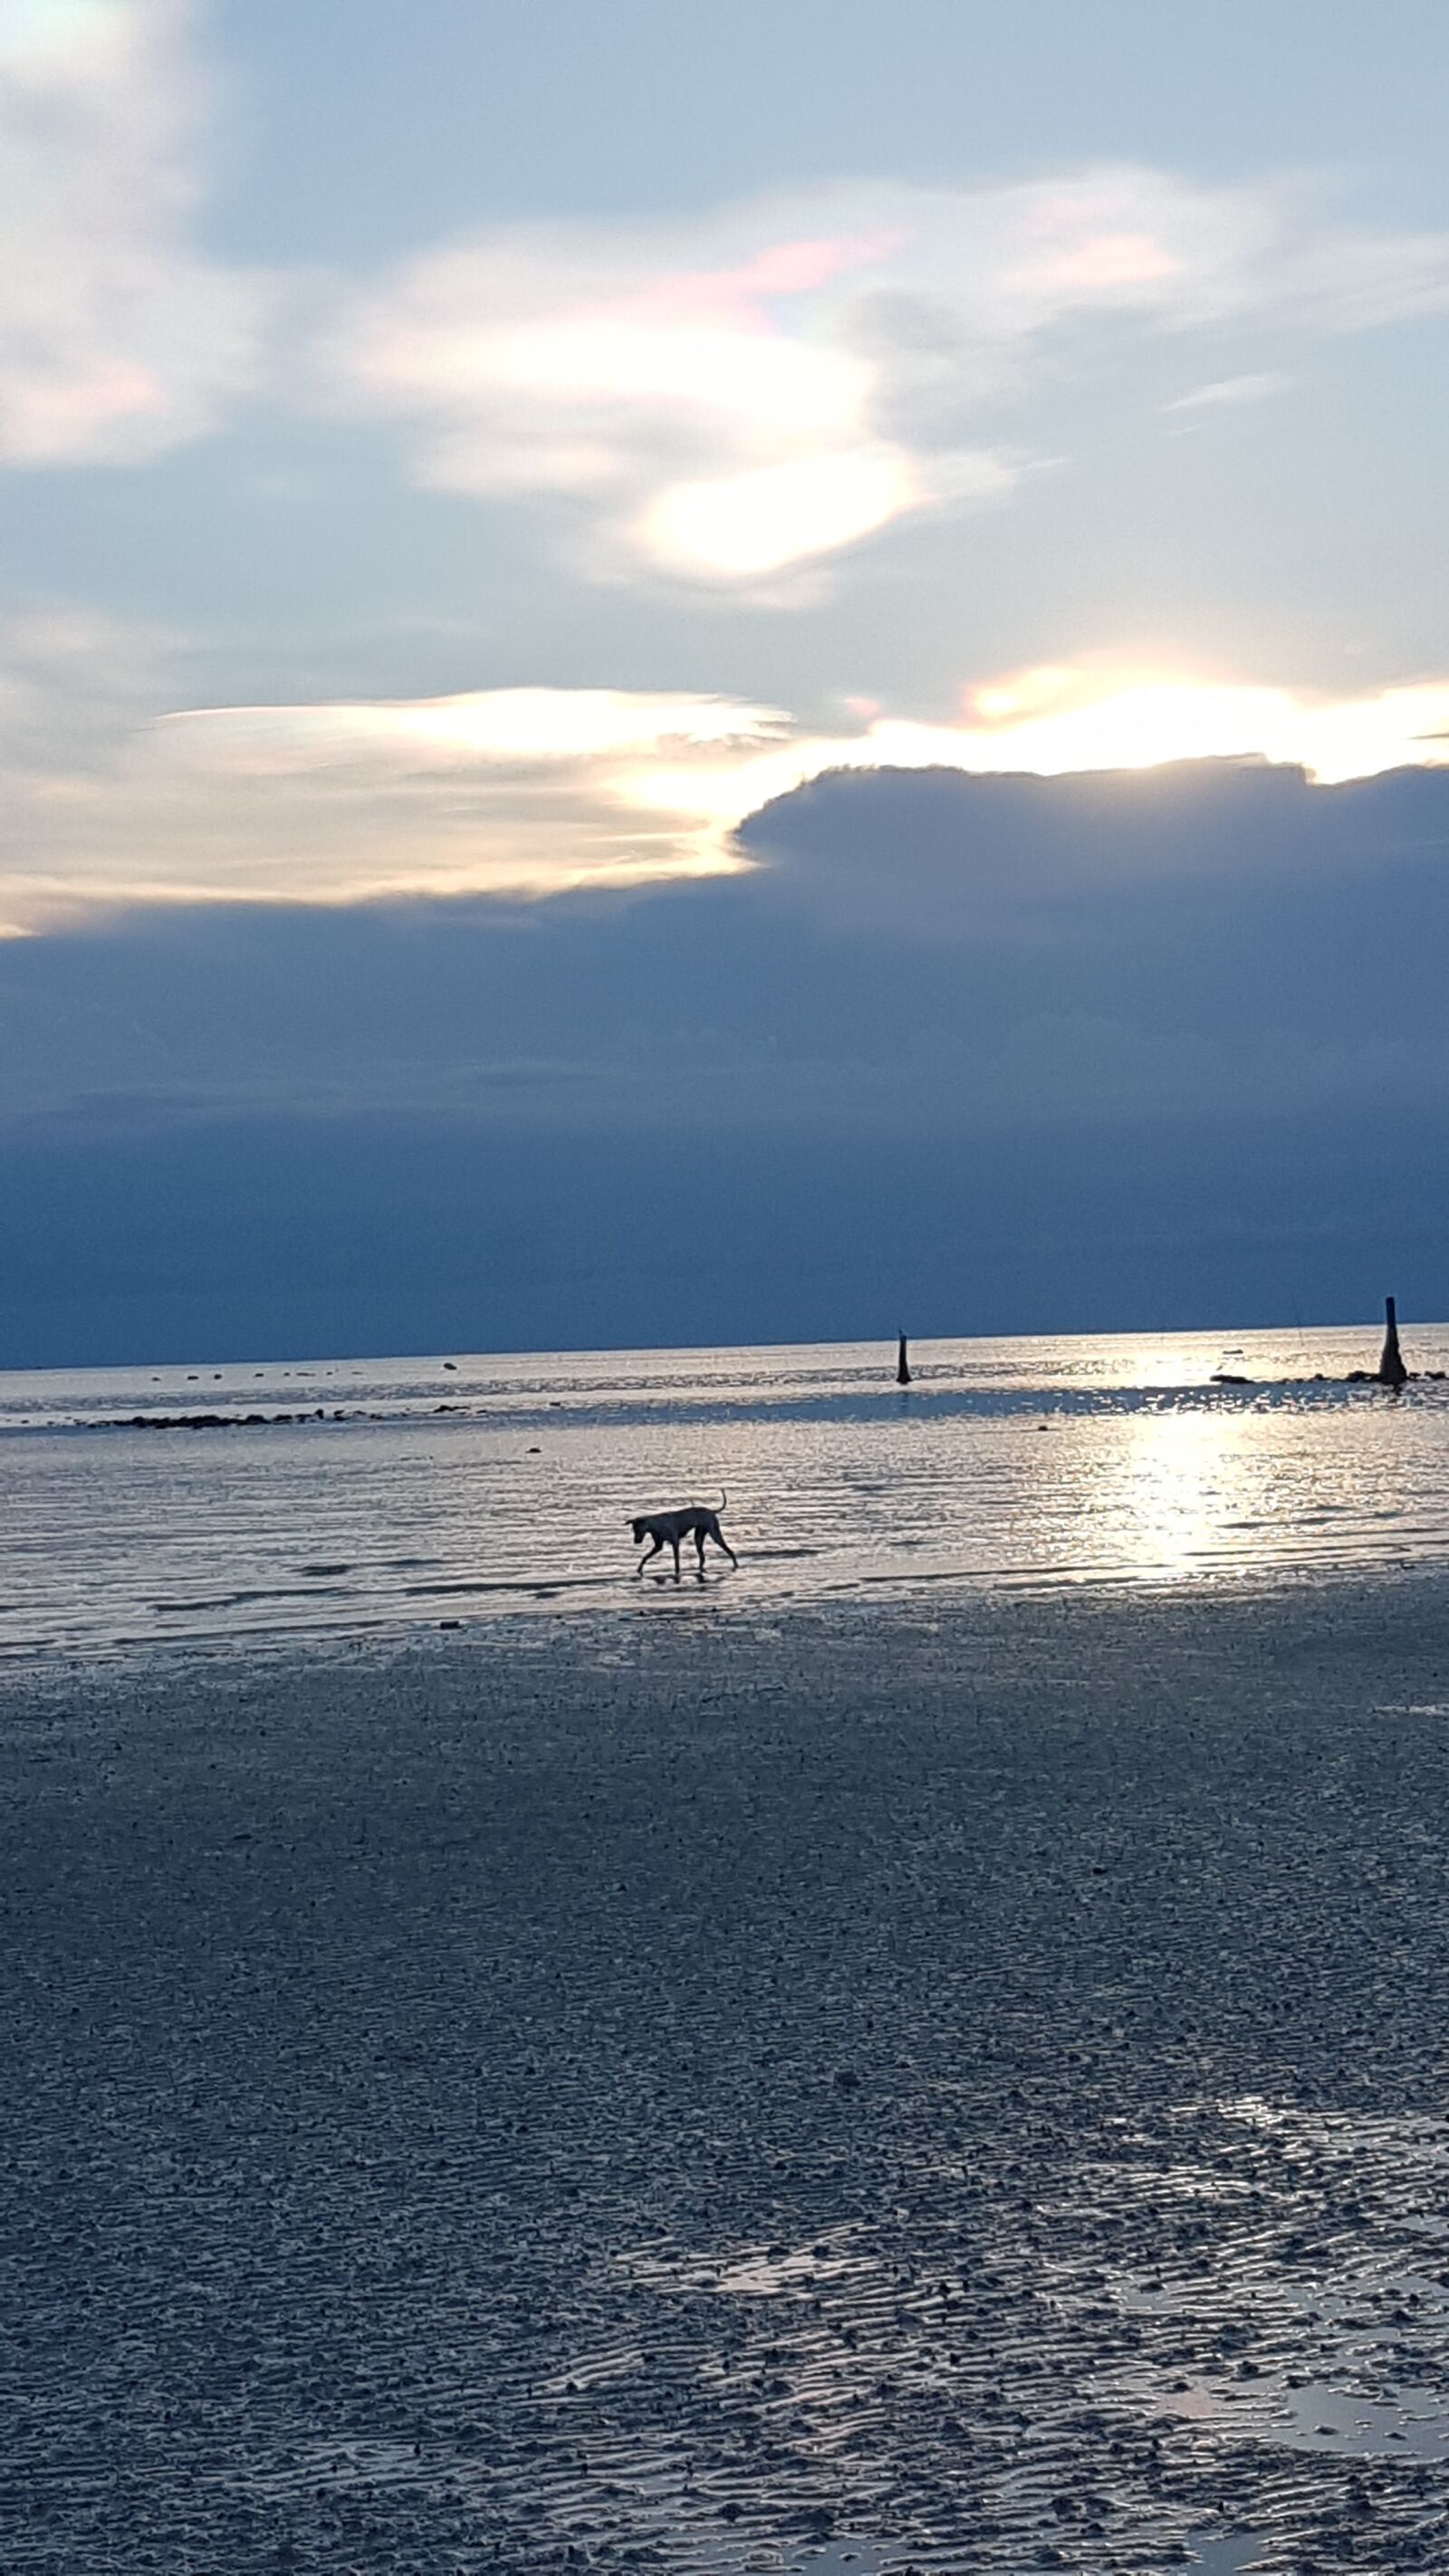 Samsung Galaxy S7 sample photo. Dog on beach, sun photography